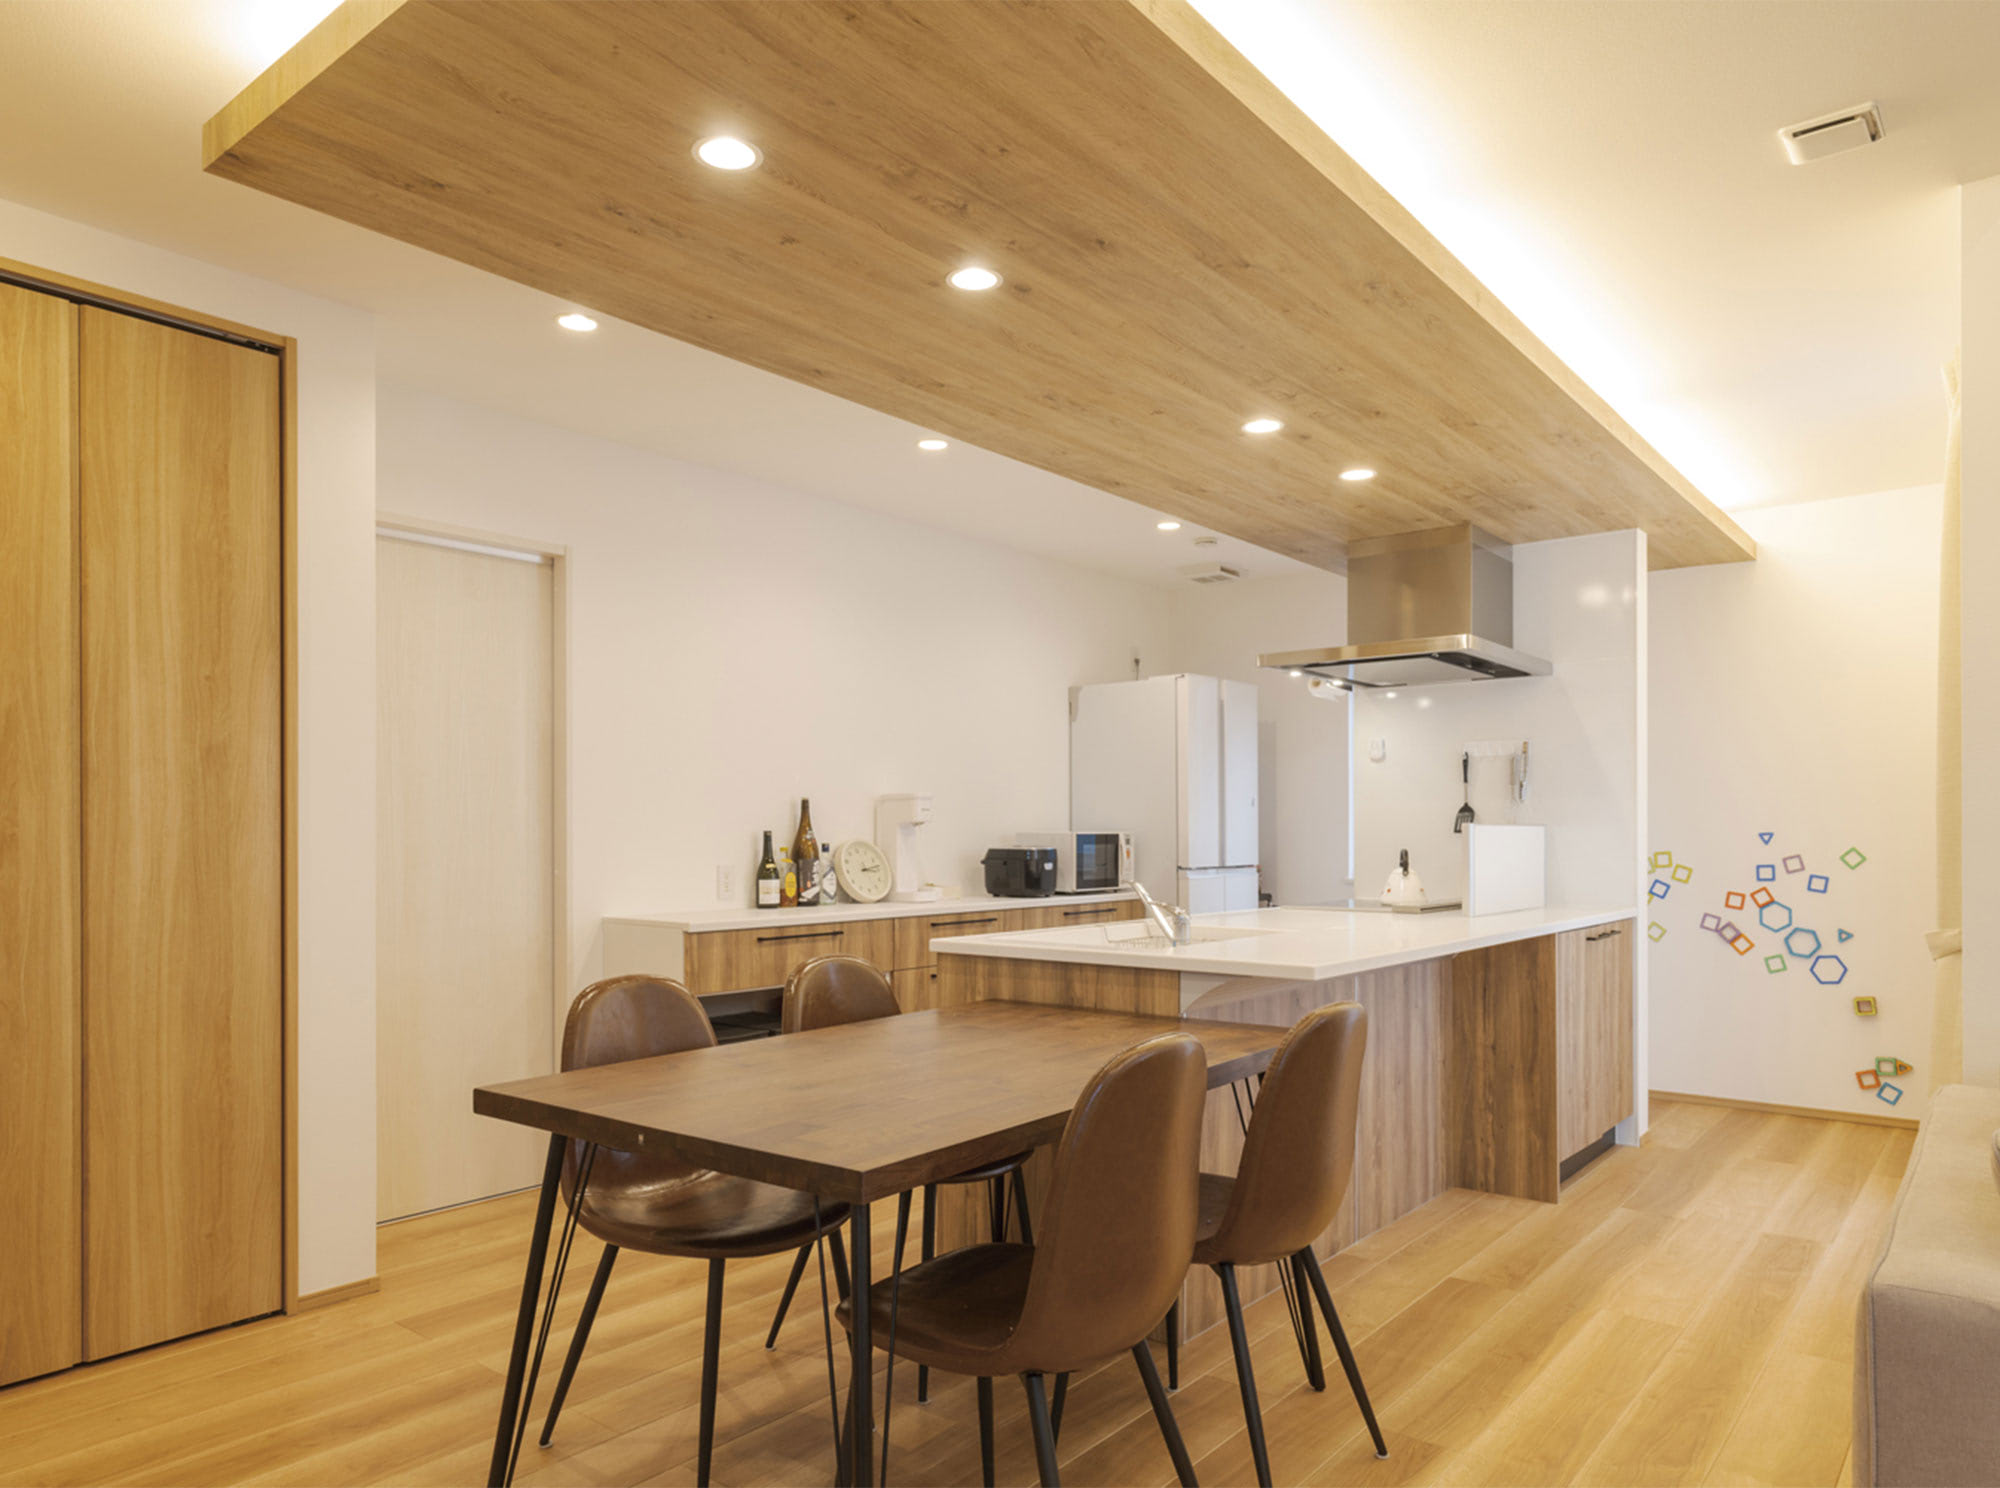 ダイニング＆キッチンは、間接照明を施した木目の下がり天井がやわらかい雰囲気を創り出しています。